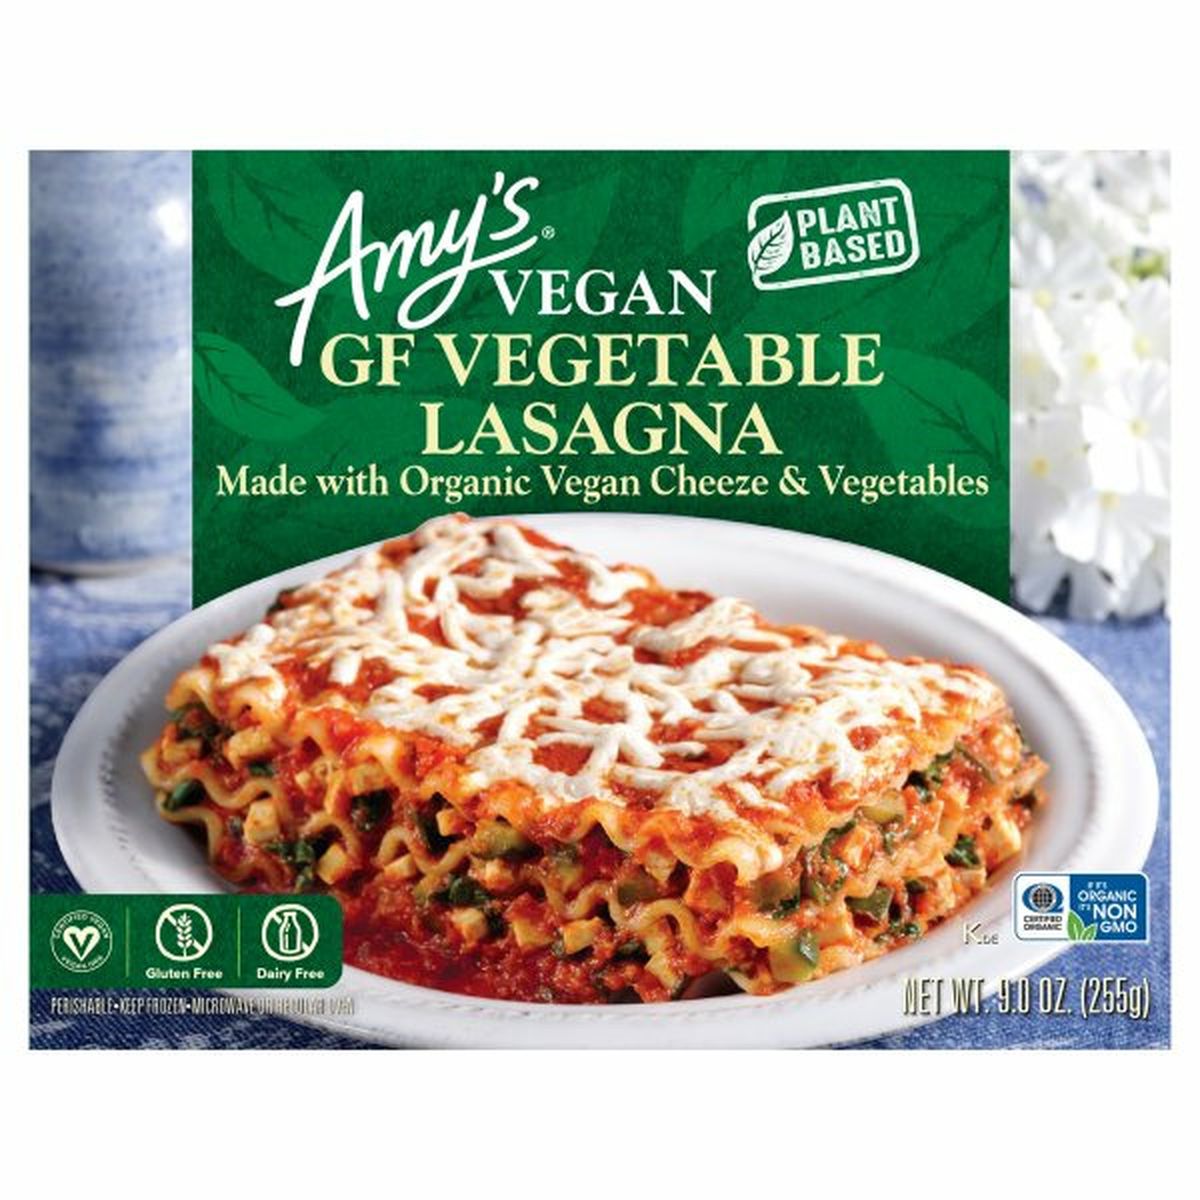 Calories in Amy's Kitchen Vegan Lasagna, GF Vegetable